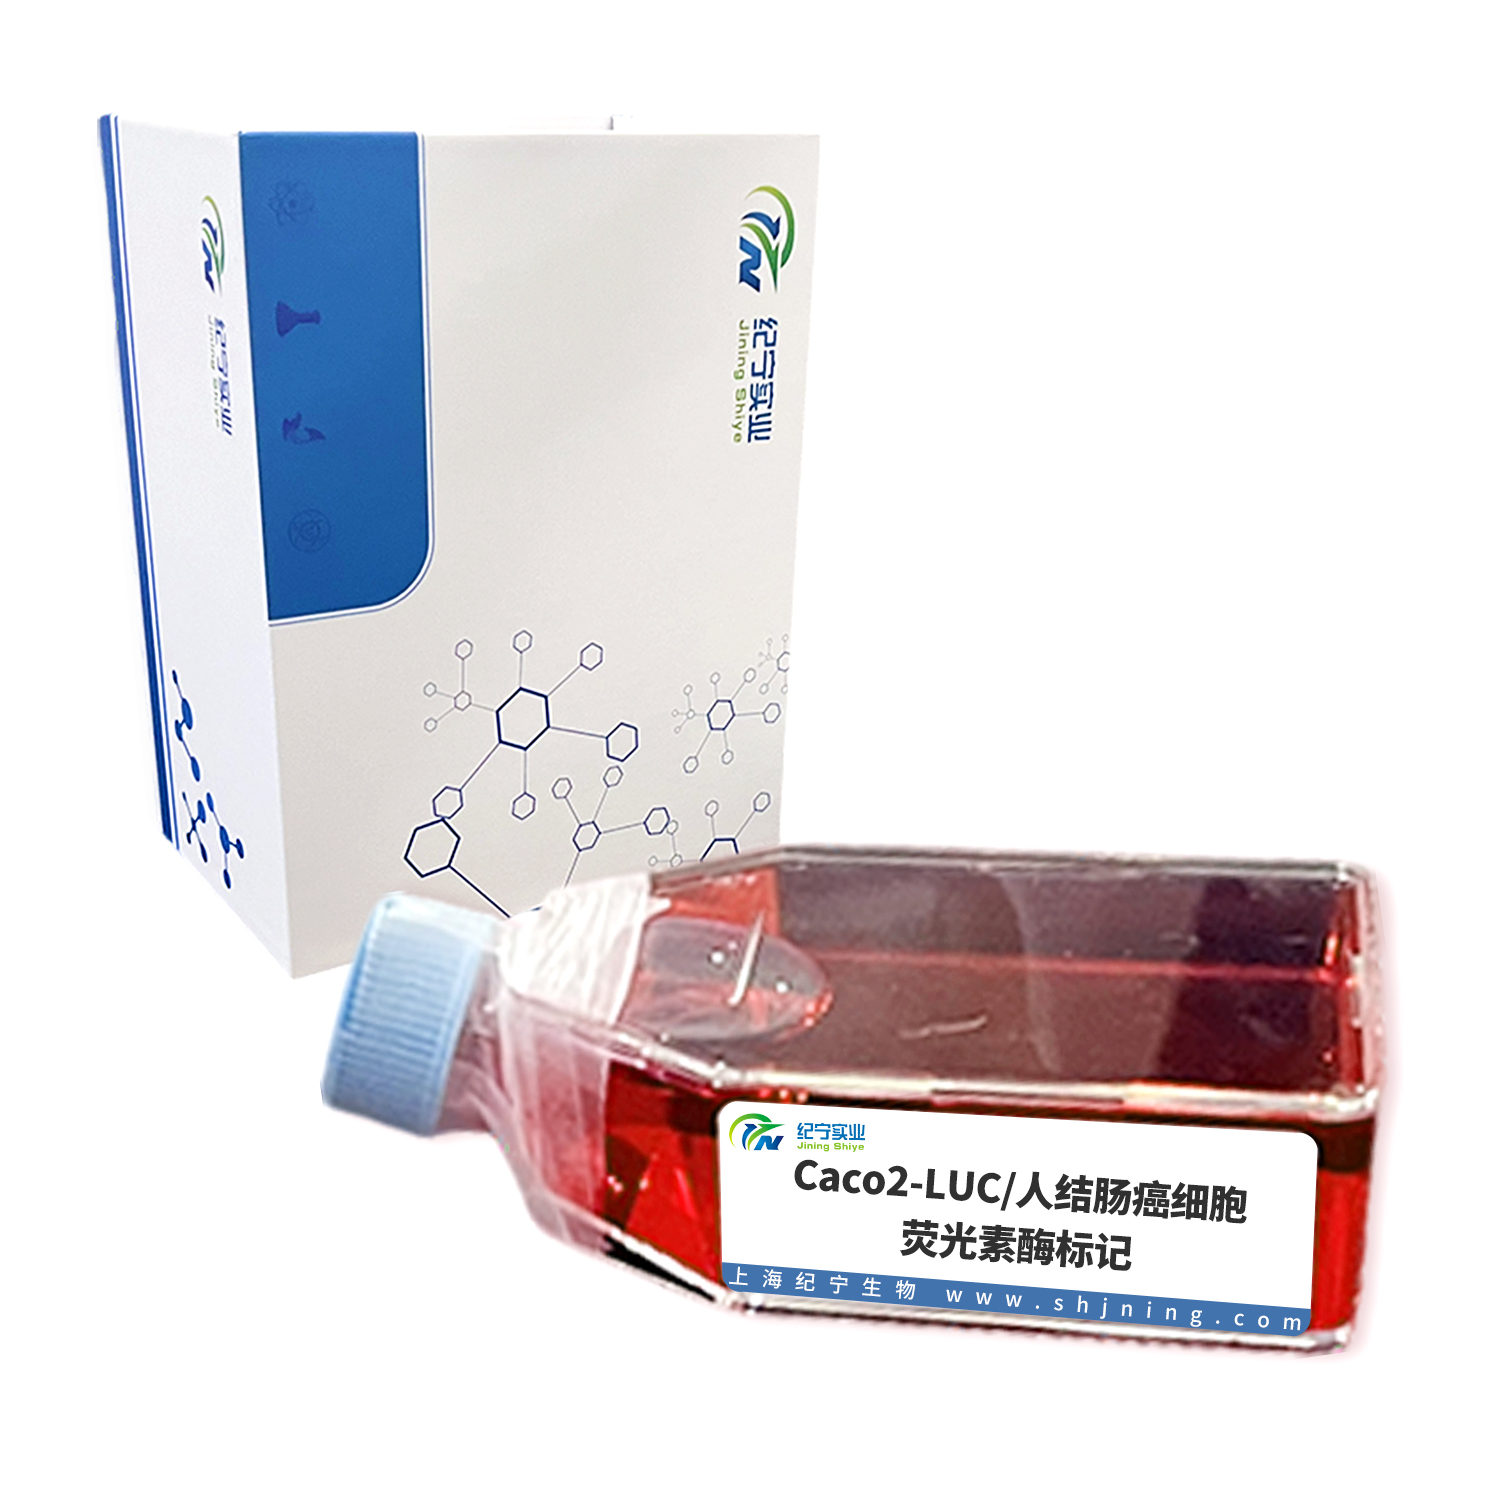 Caco2-LUC/人结肠癌细胞-荧光素酶标记